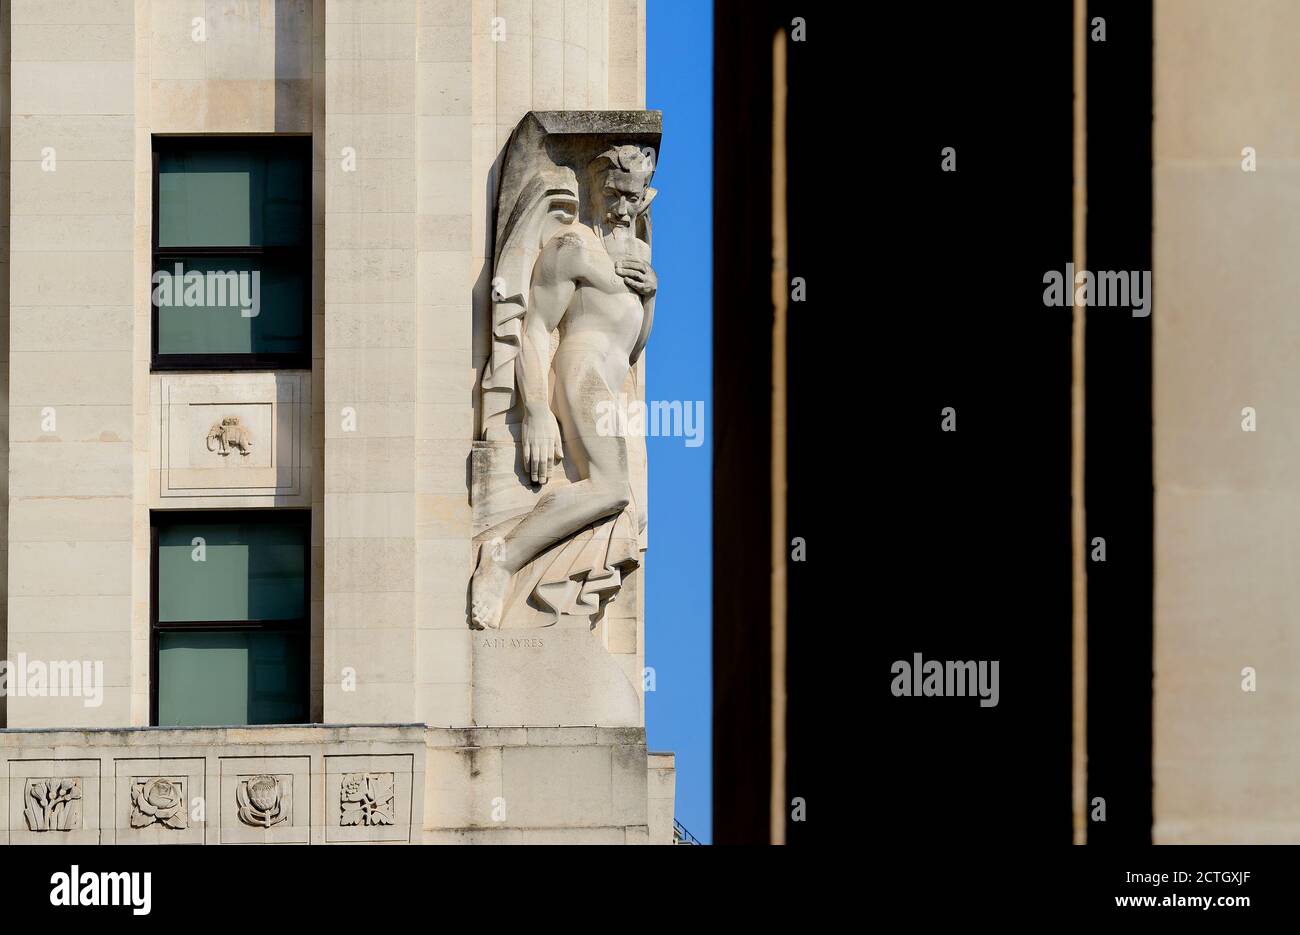 London, England, Großbritannien. Neues Adelphi-Gebäude, Adam Street / Victoria Embankment. Art déco (1938) Portland Stone. Allegorische Statue "Kontemplation" (durch EIN Stockfoto